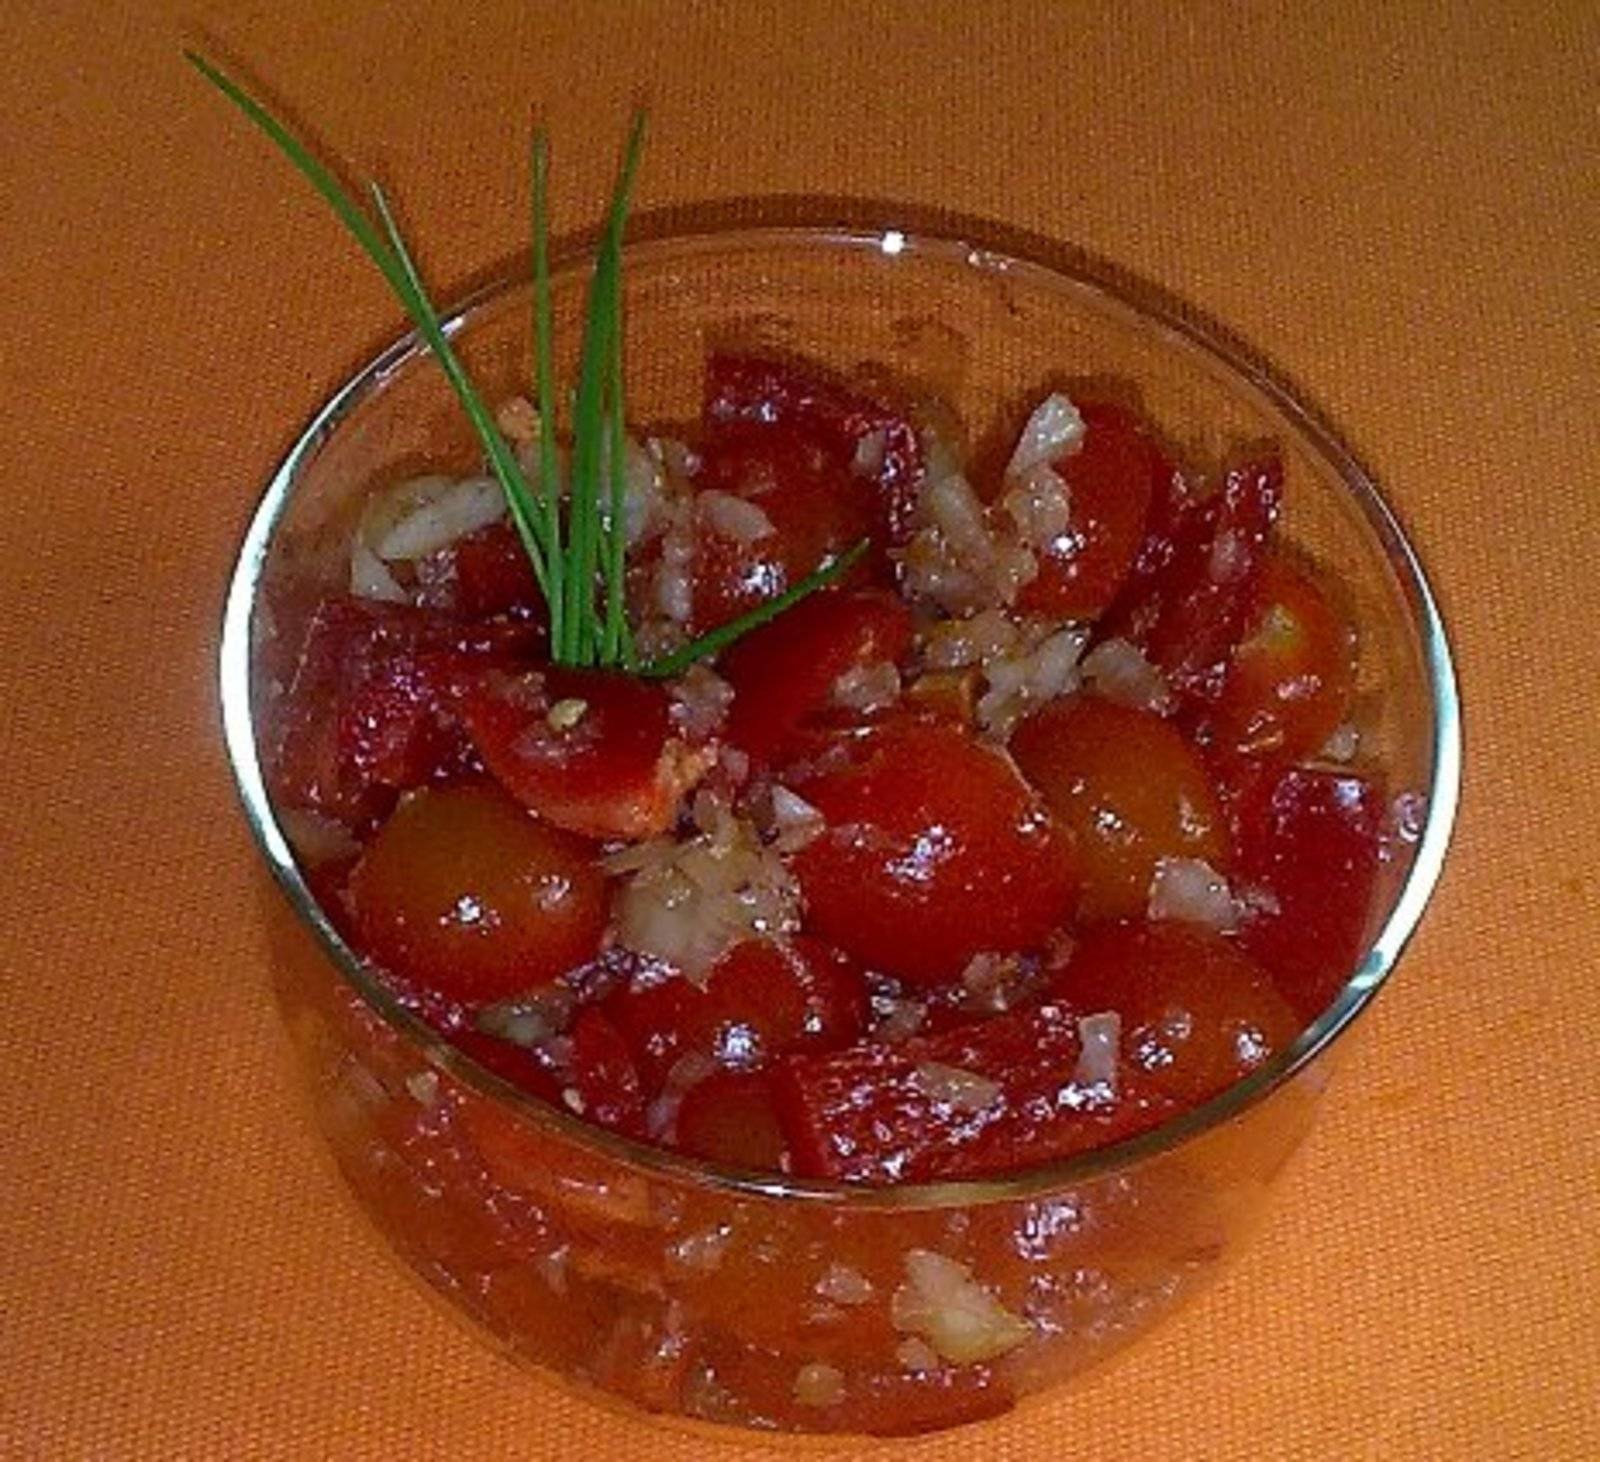 Paprika-Tomatensalat